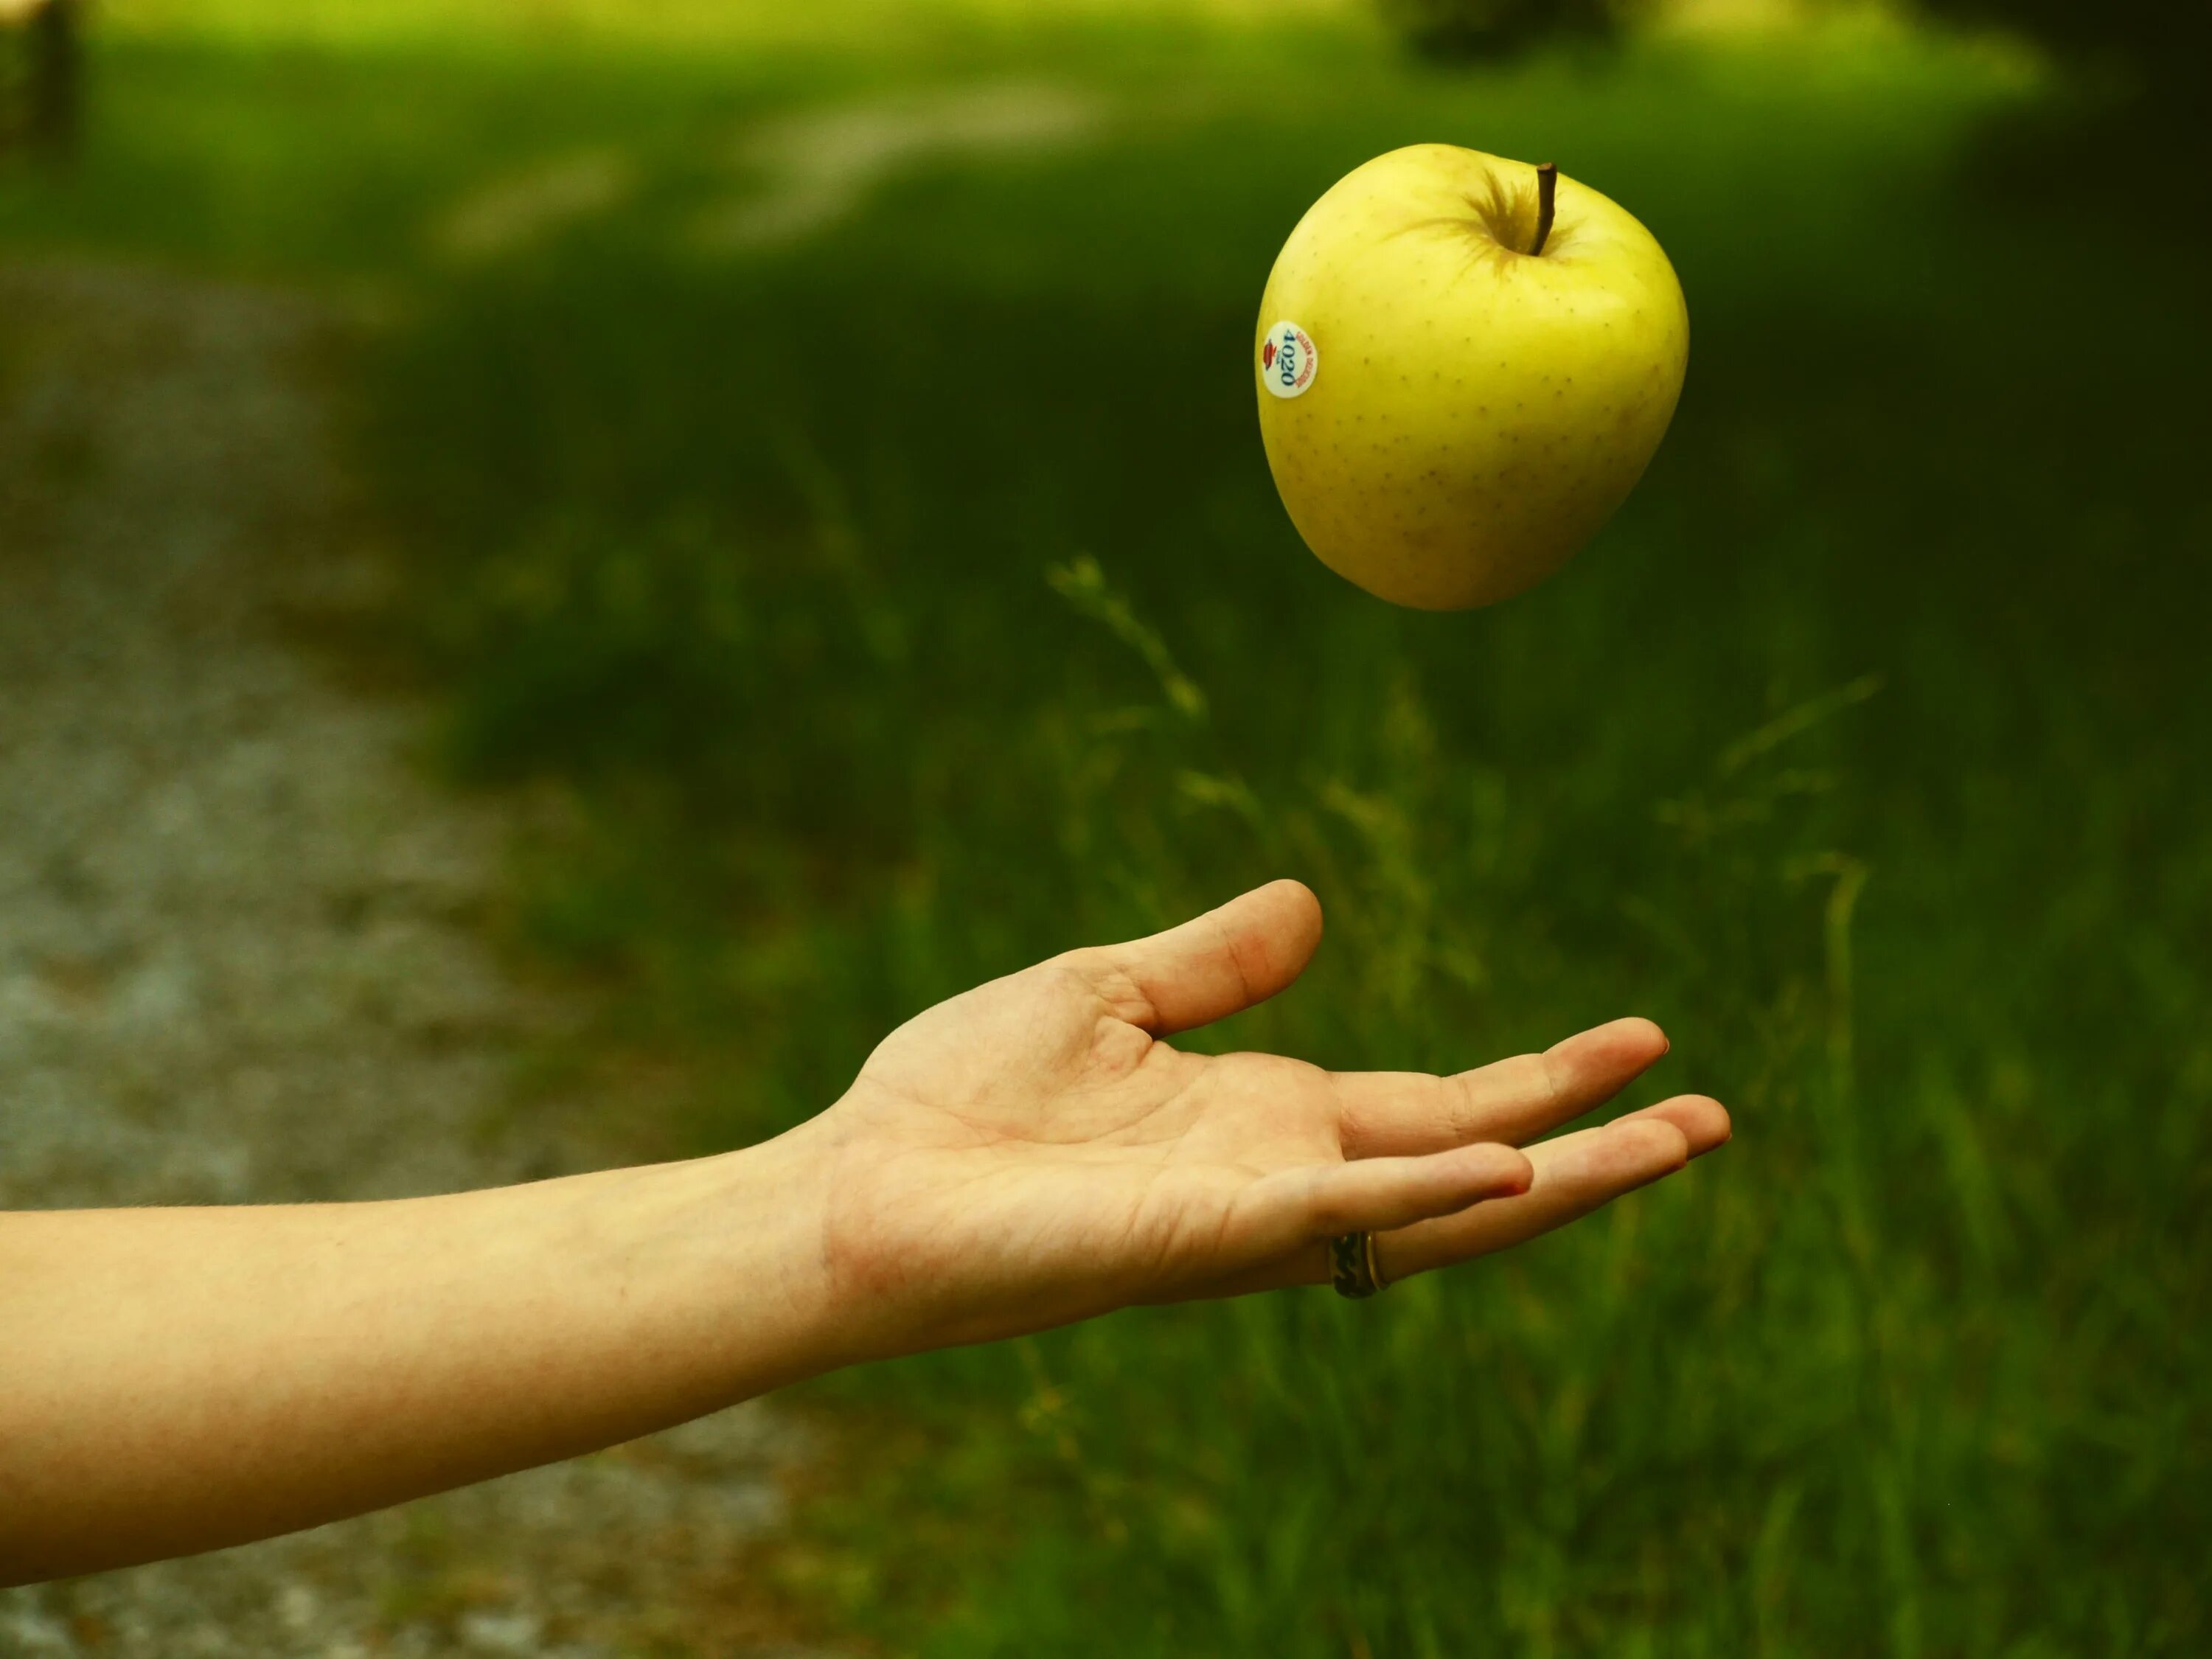 Кидай ловлю. Яблоко в руке. Падающее яблоко. Предмет в руке. Рука с яблоком на темном фоне.